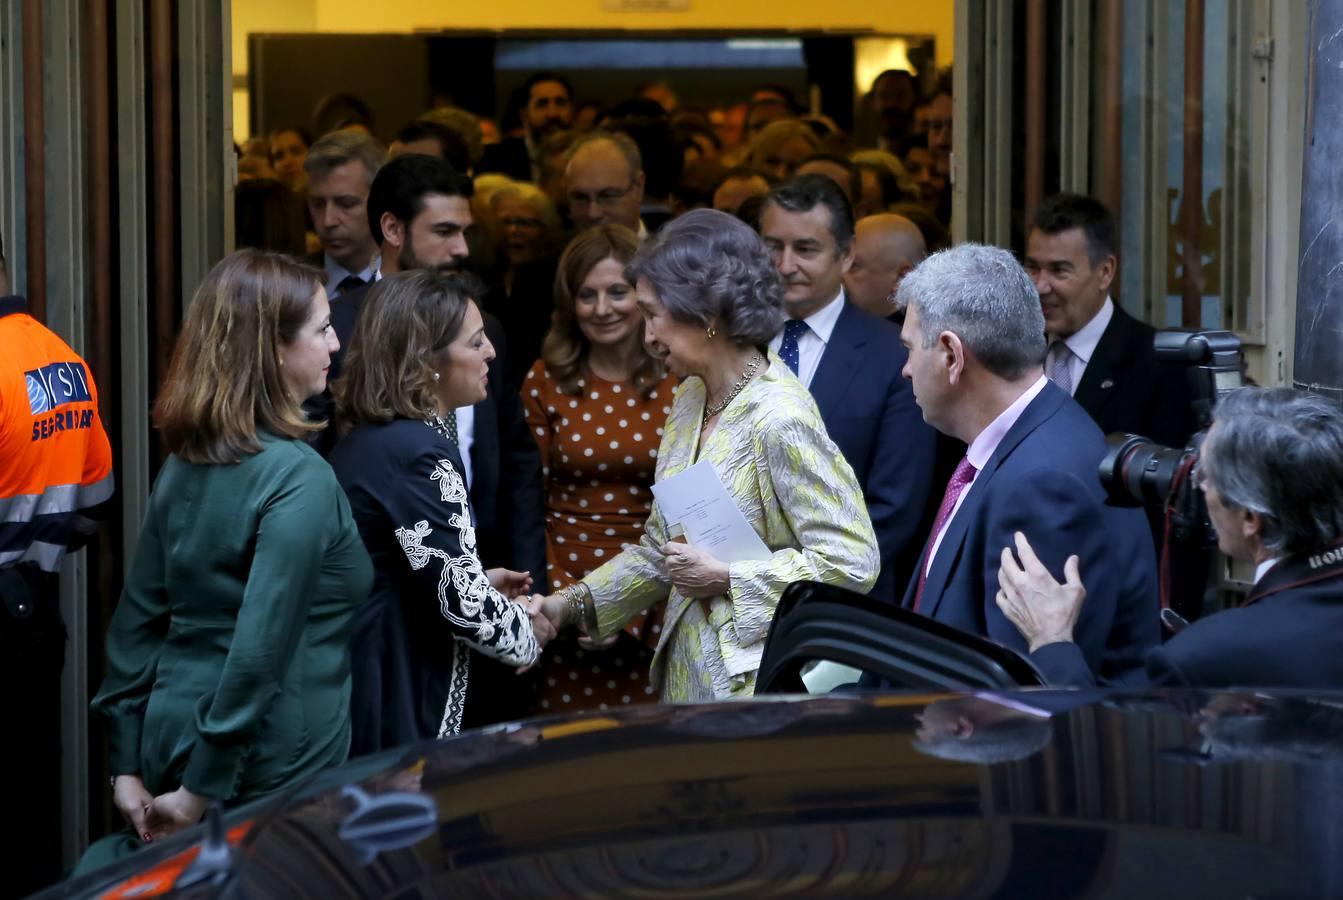 La visita de la Reina Doña Sofía a Córdoba, en imágenes